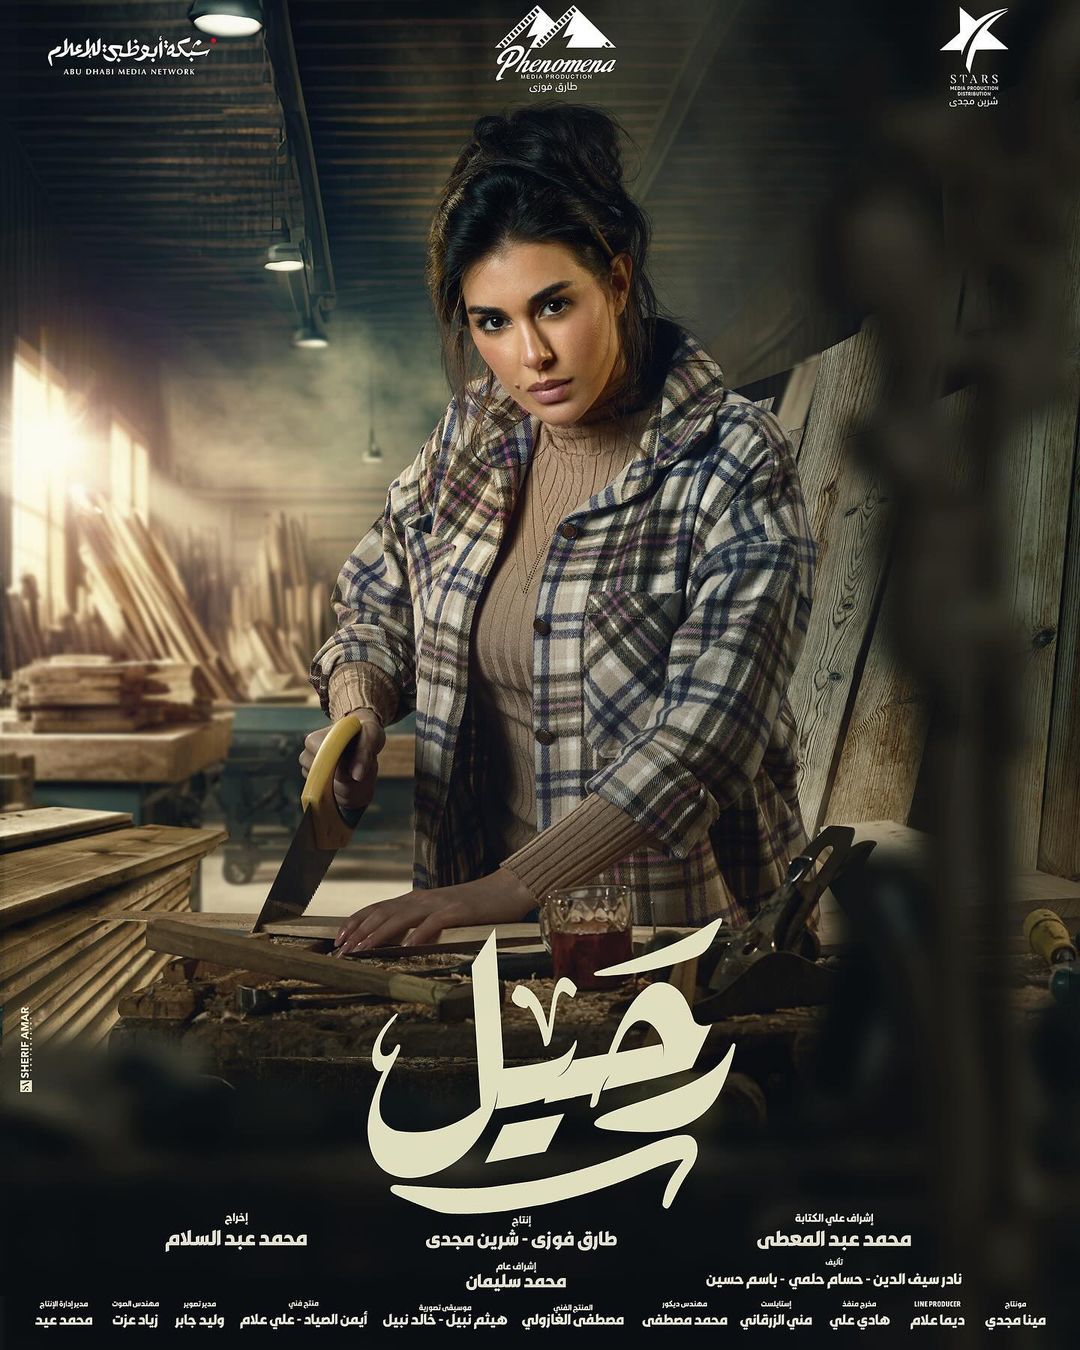 ياسمين صبري تتصدر اهتمام الجمهور بسبب مسلسلها "رحيل"